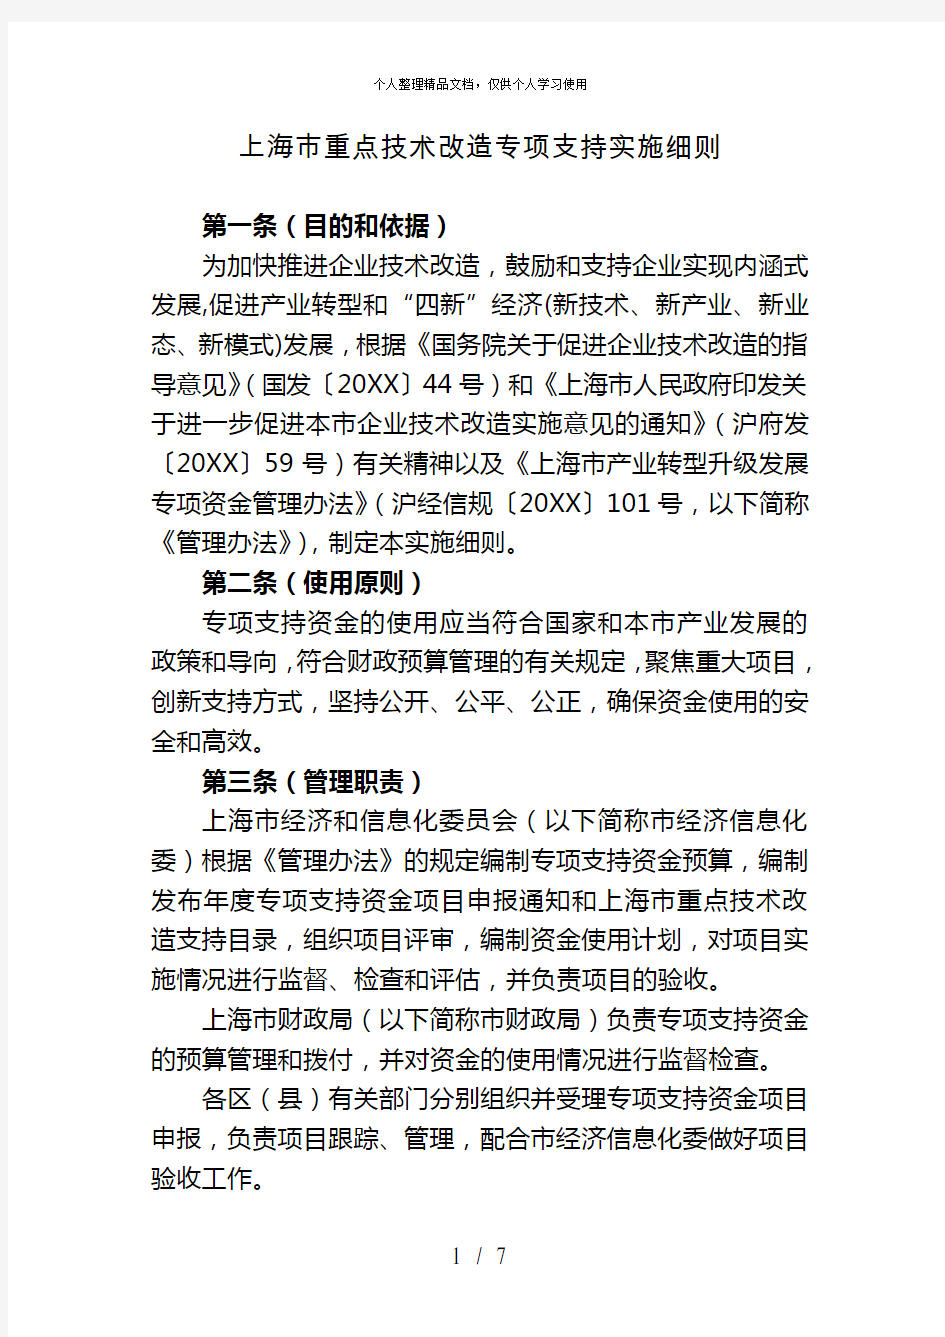 上海市重点技术改造专项支持实施细则